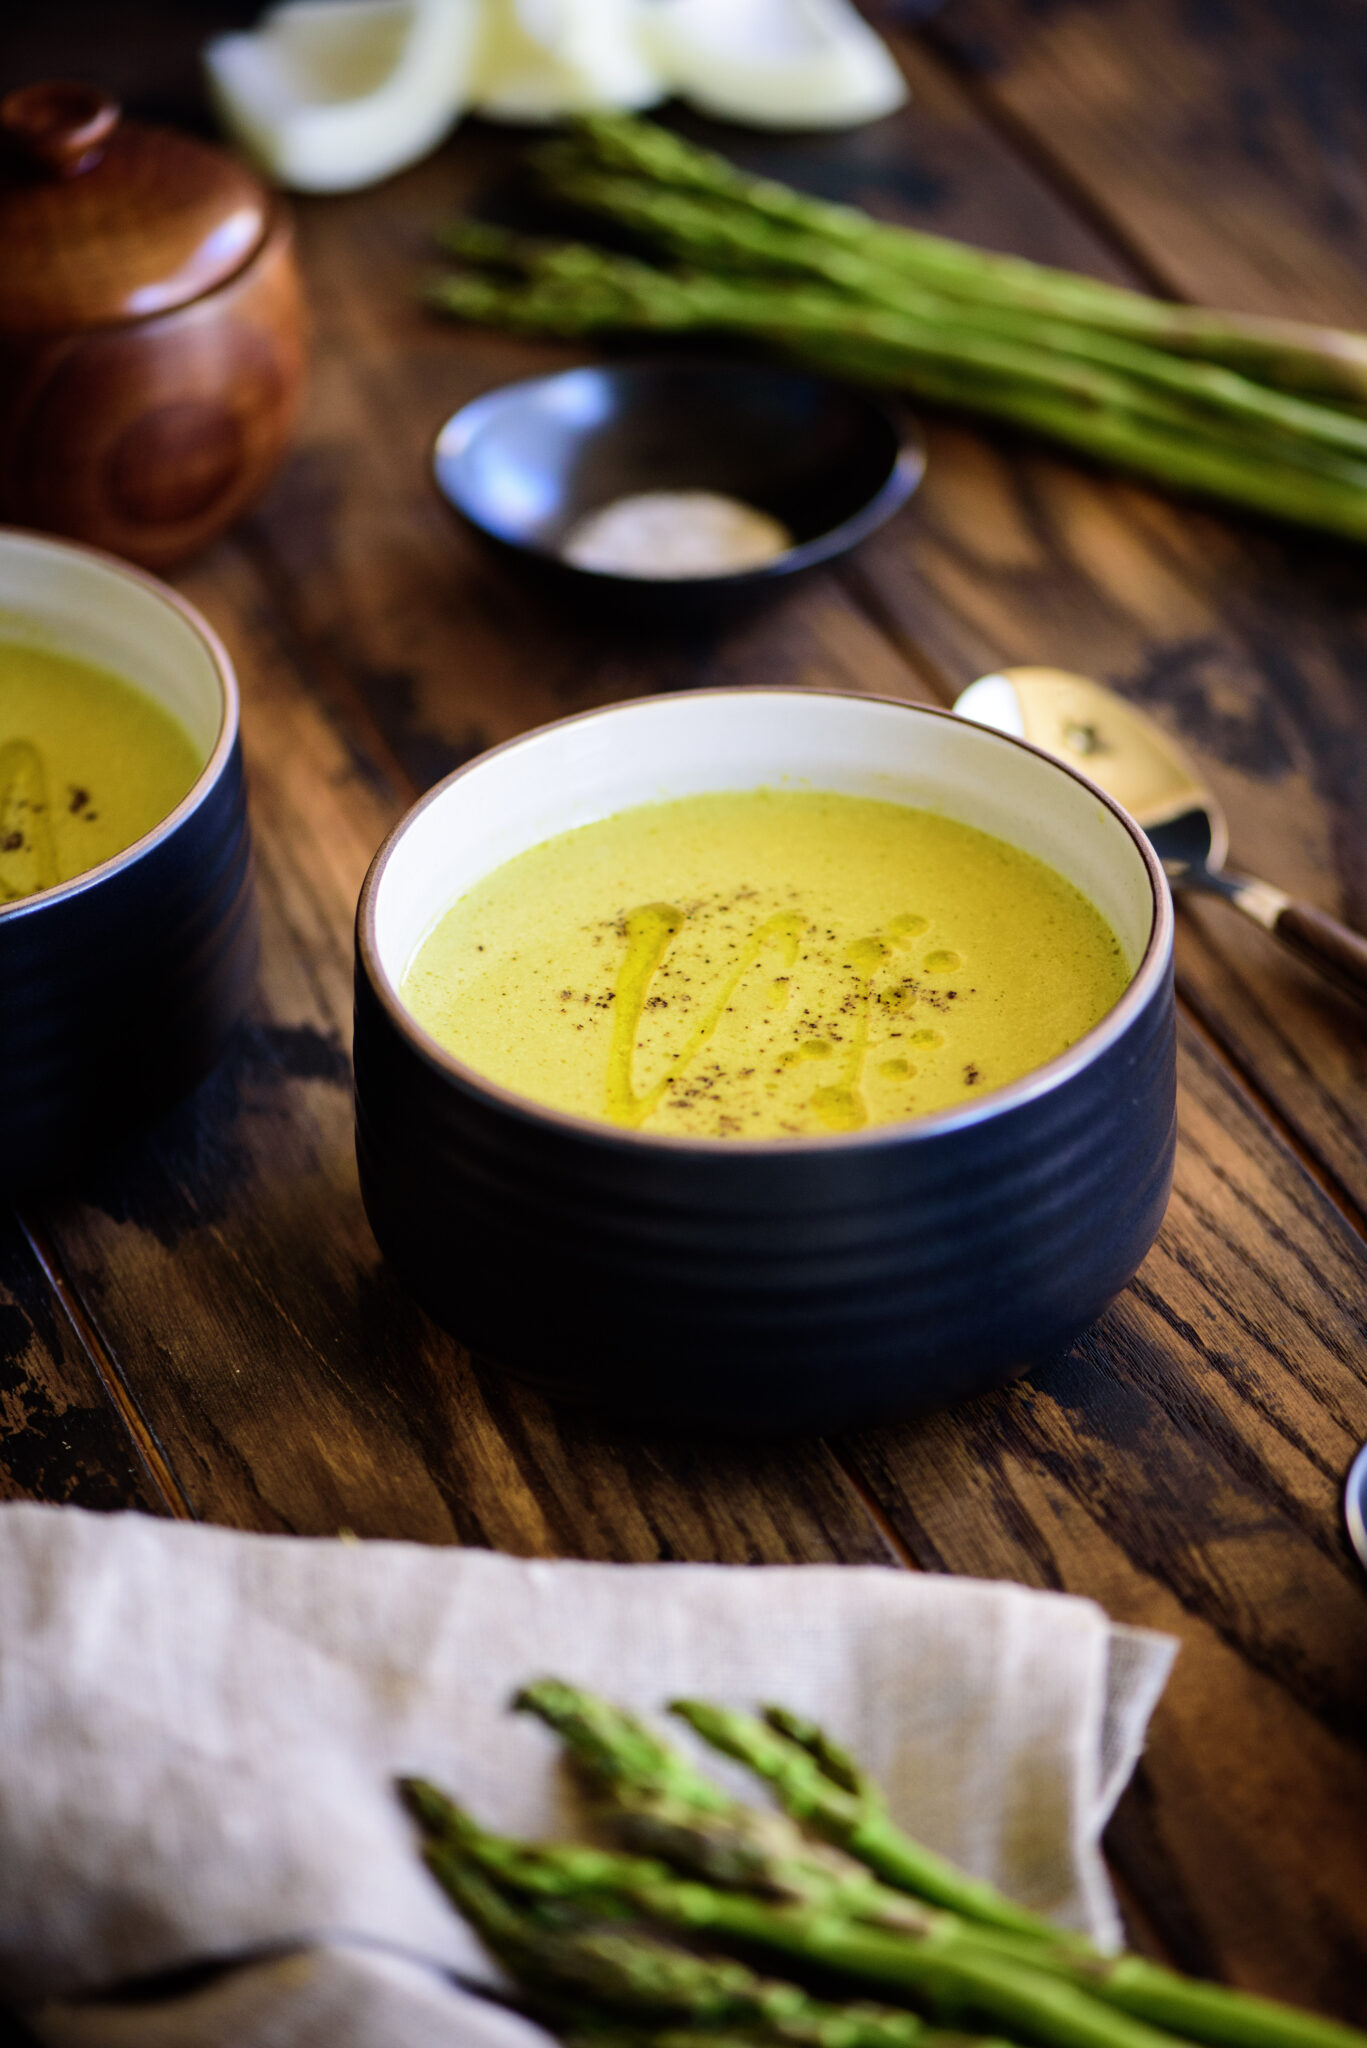 Truffled Cream of Asparagus Soup